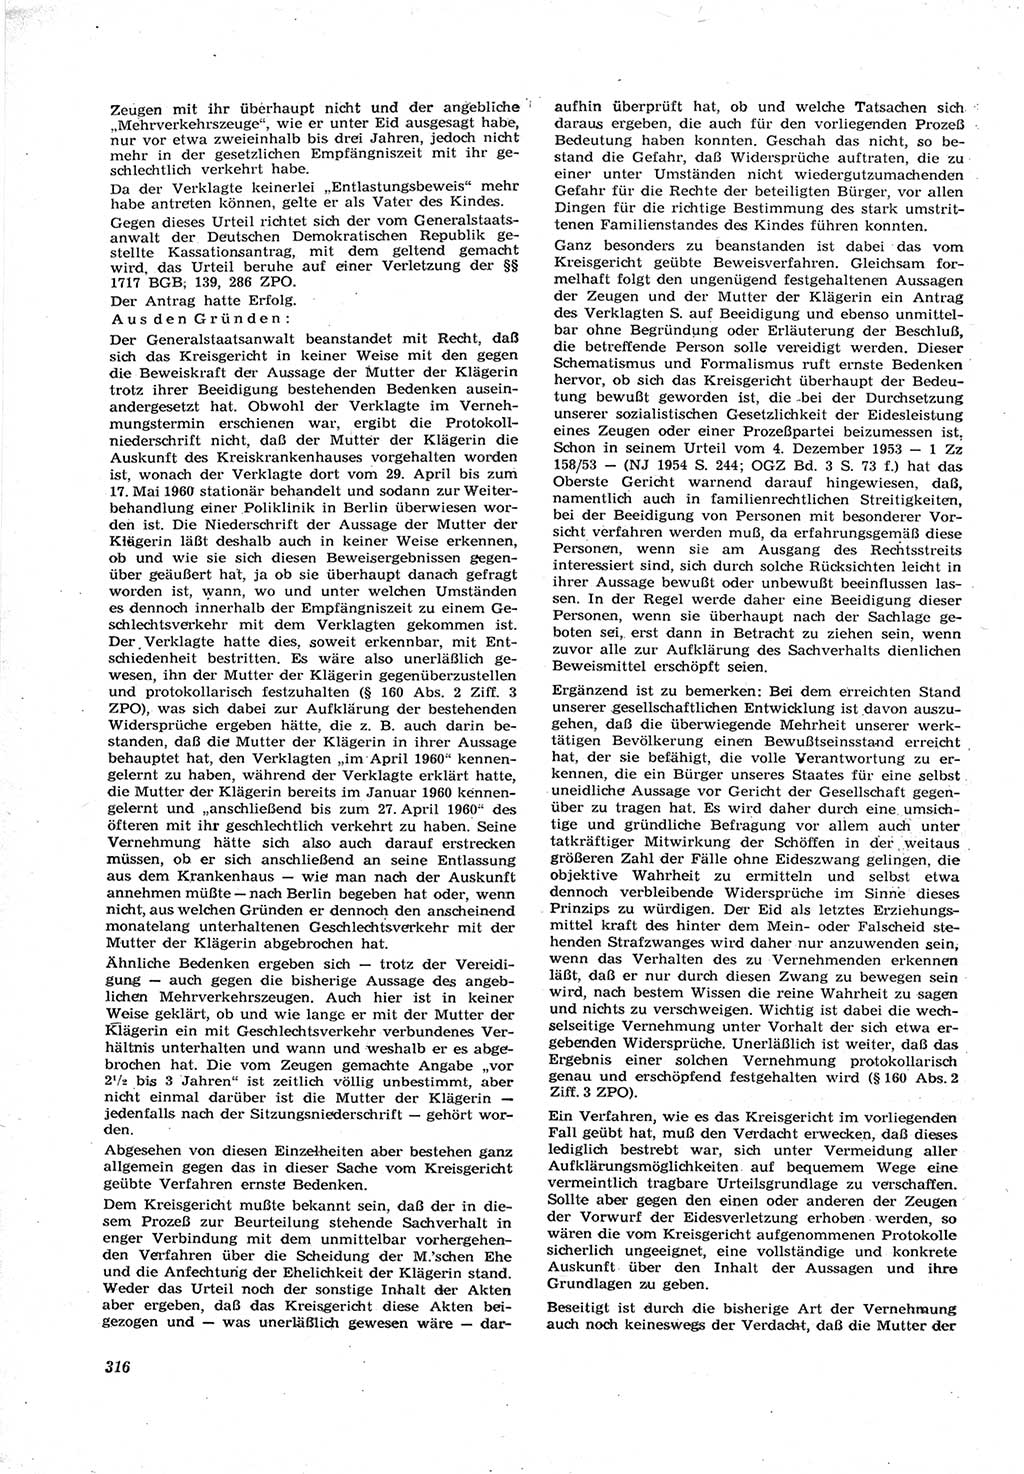 Neue Justiz (NJ), Zeitschrift für Recht und Rechtswissenschaft [Deutsche Demokratische Republik (DDR)], 17. Jahrgang 1963, Seite 316 (NJ DDR 1963, S. 316)